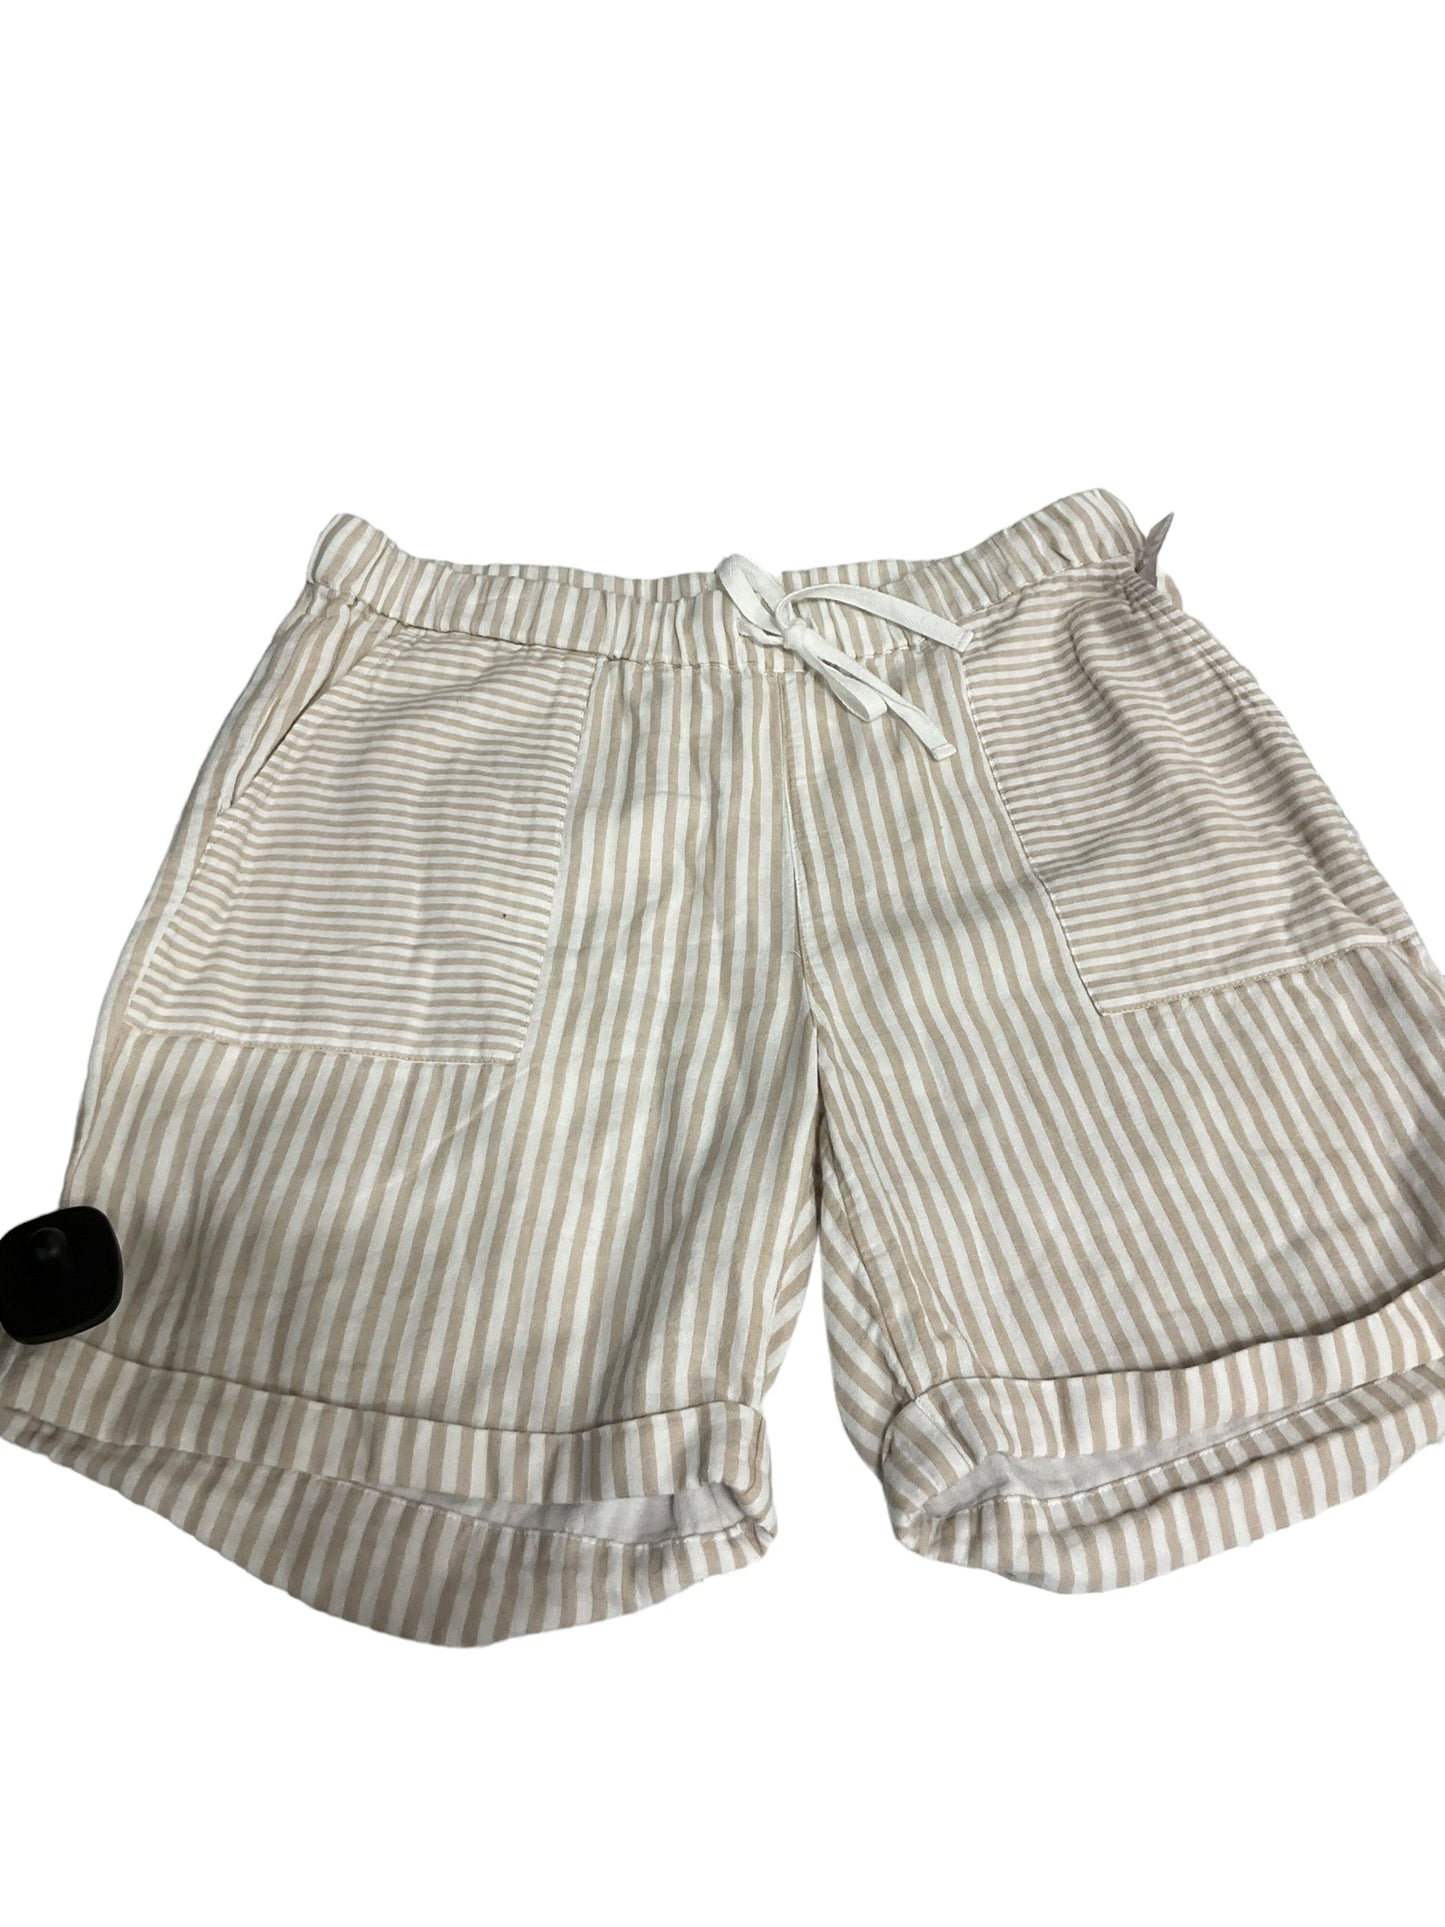 Tan & White Shorts J. Jill, Size S